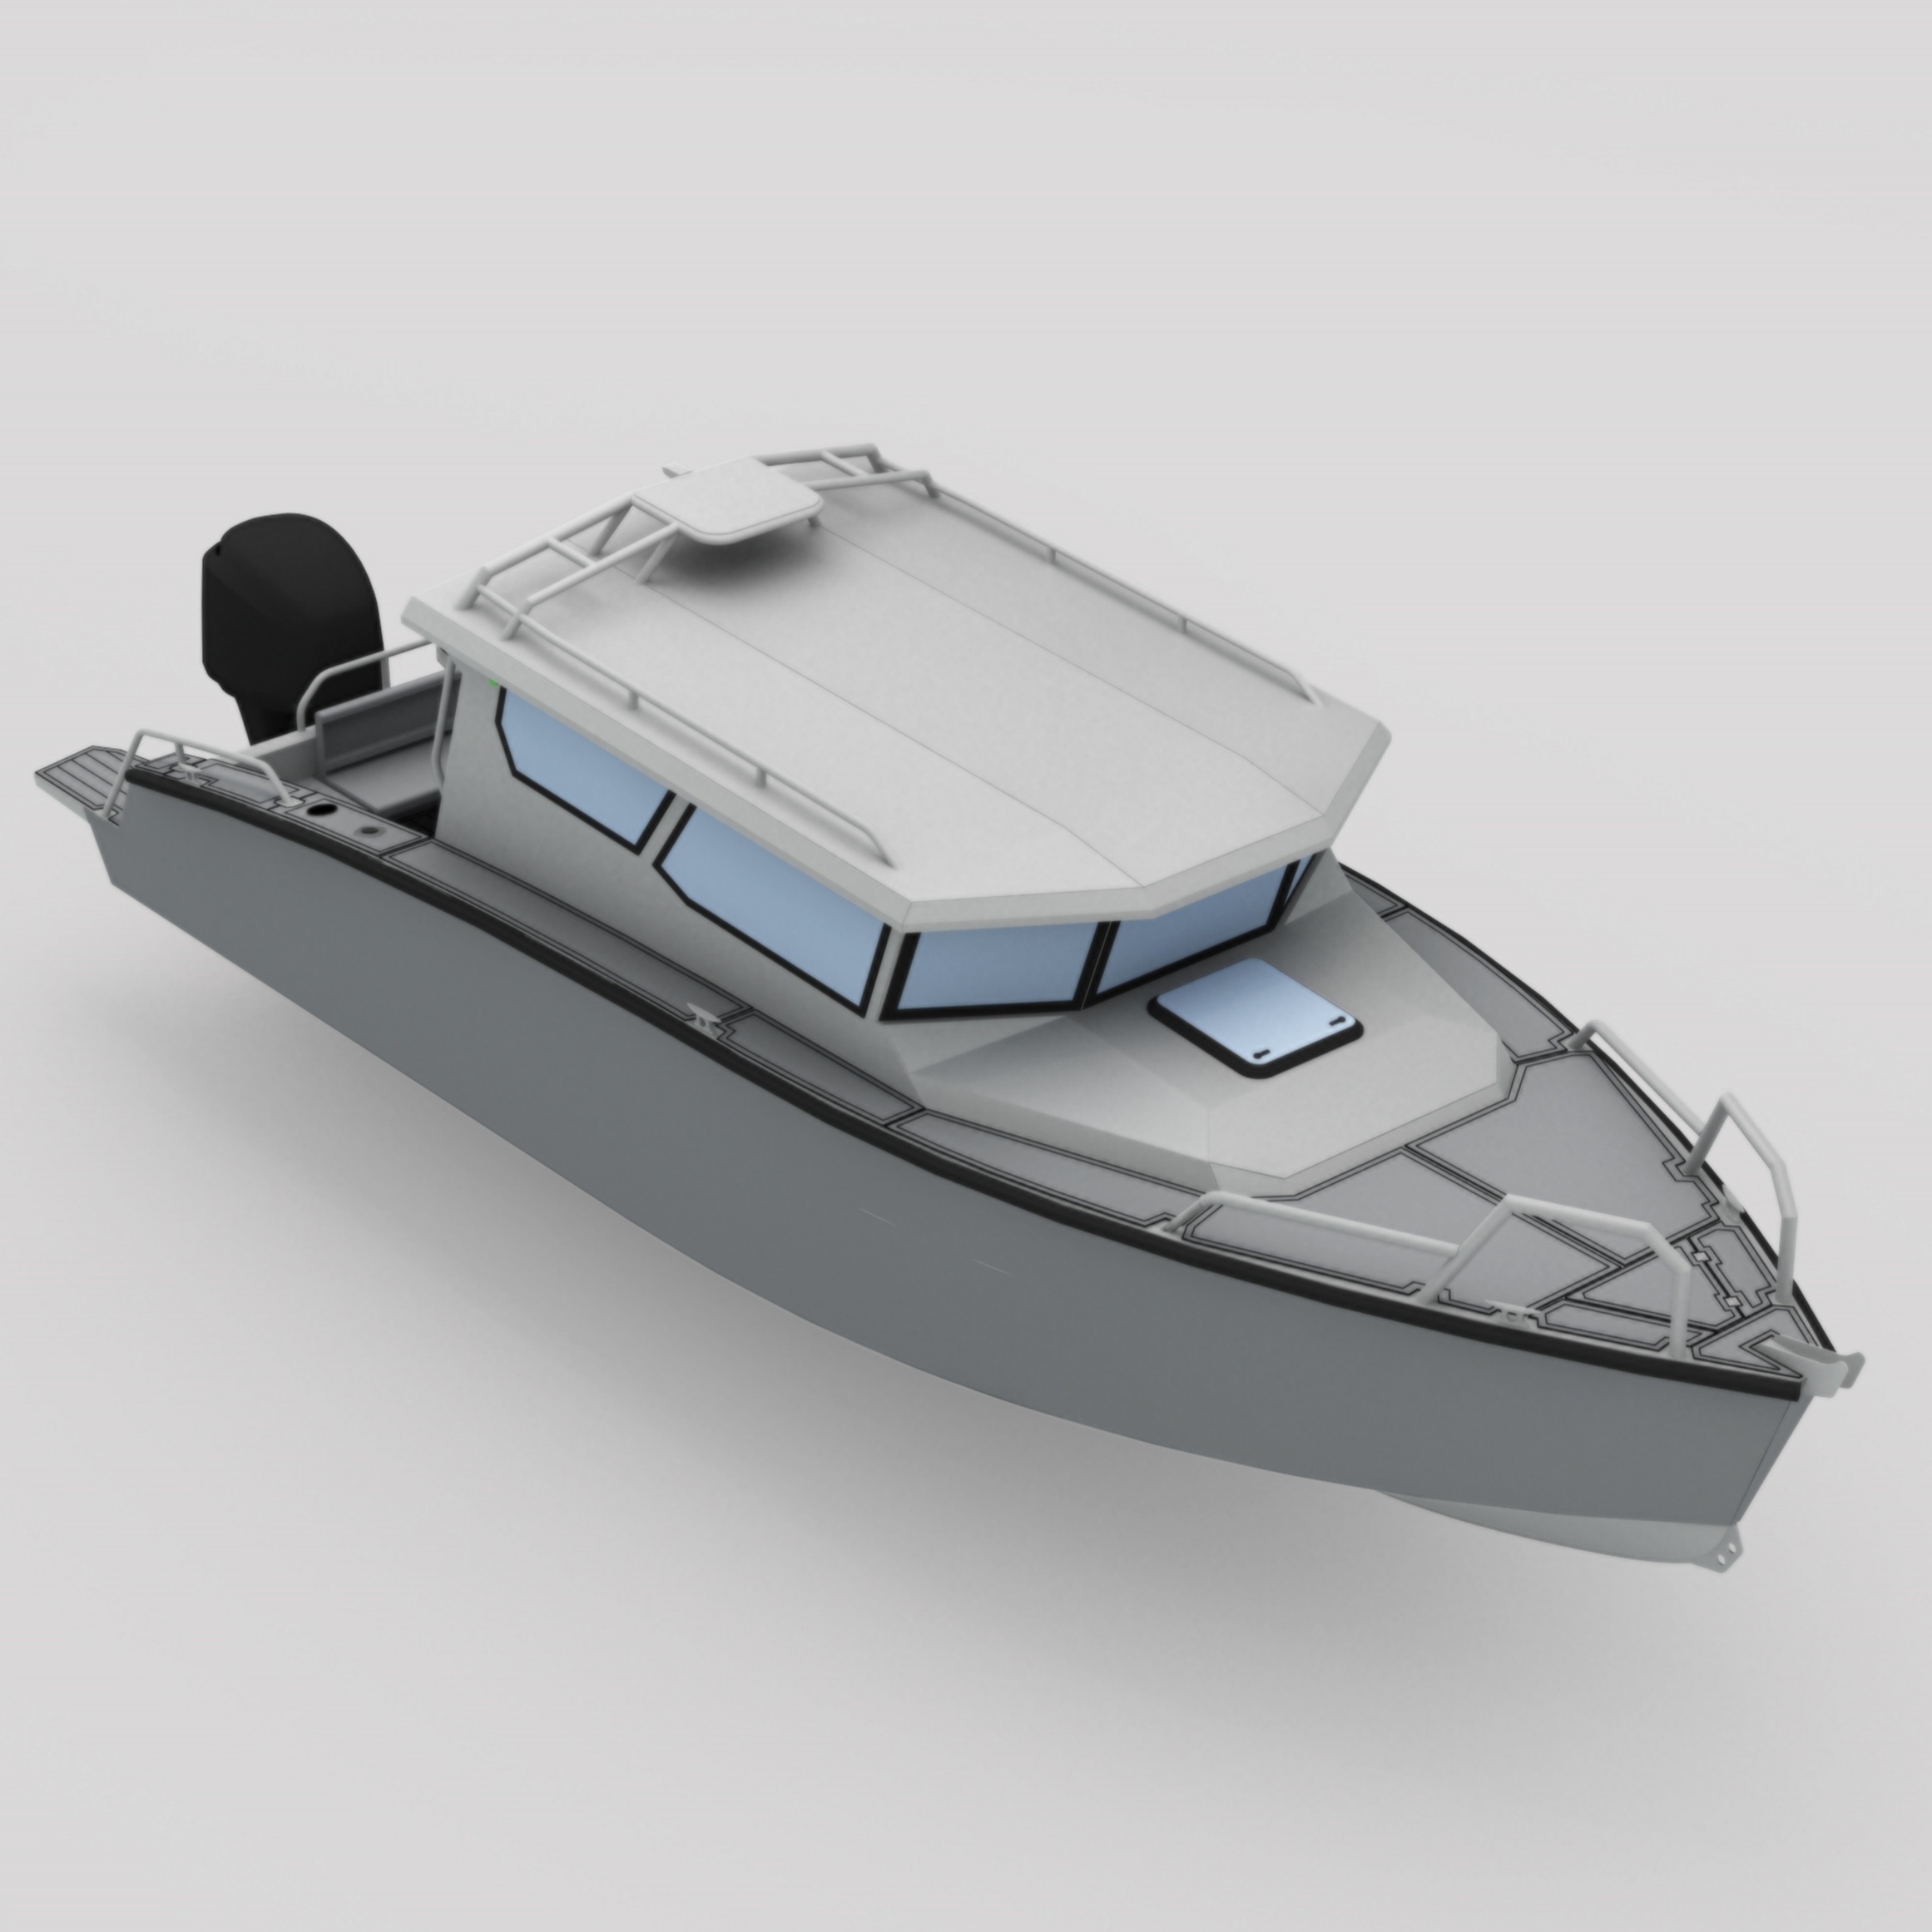 Thuyền nhôm Bladecraft 8,4m để tuần tra thể thao câu cá